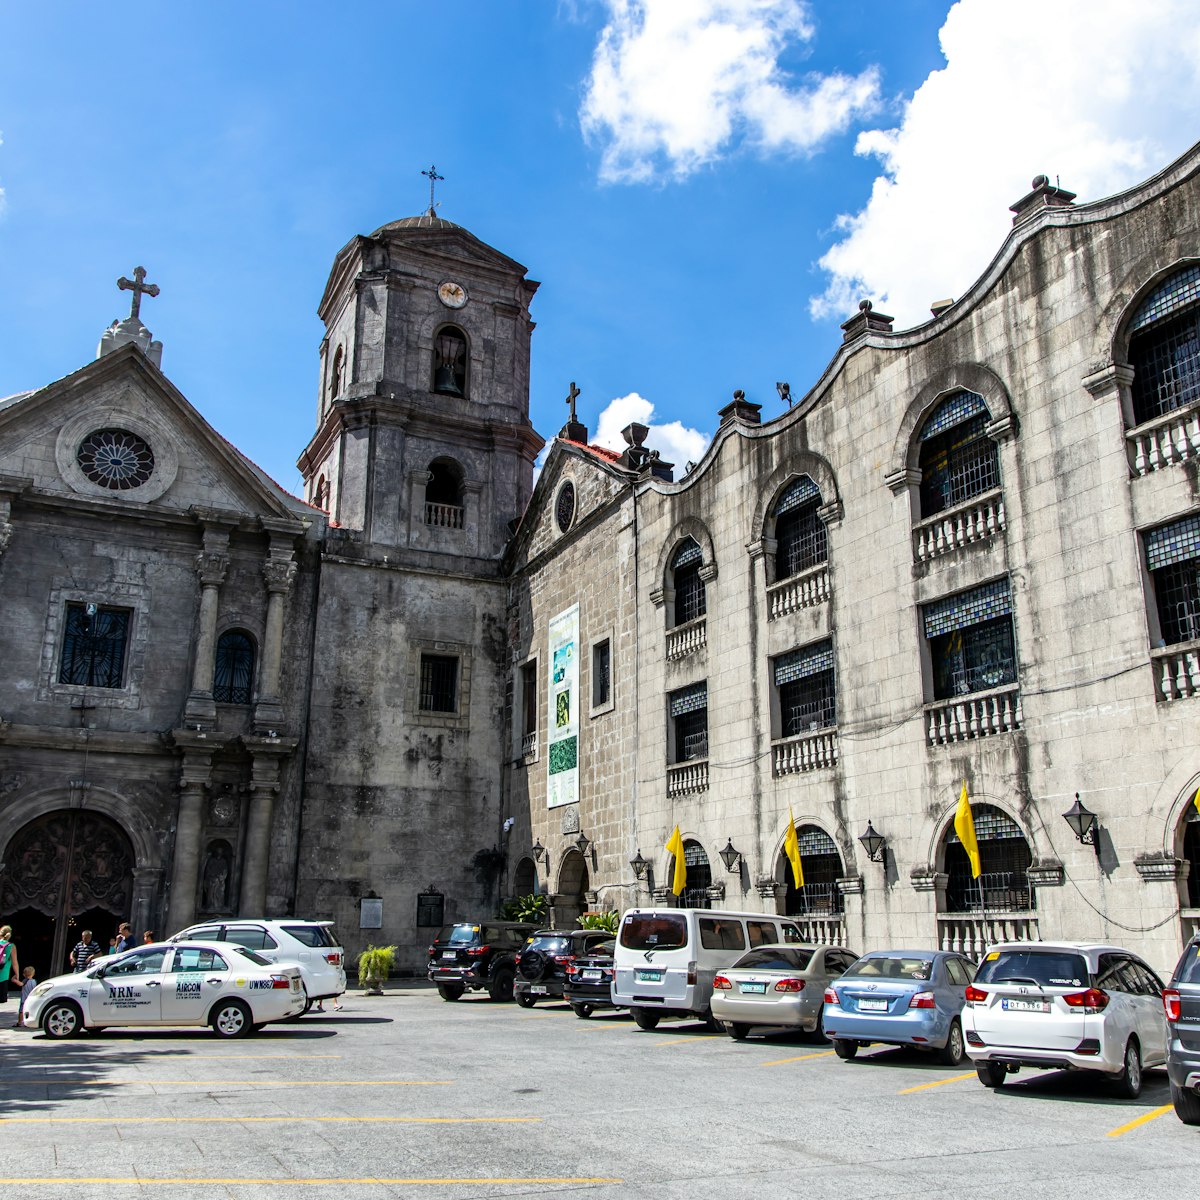 San Agustin Church at Intramuros, Manila, Philippines.
